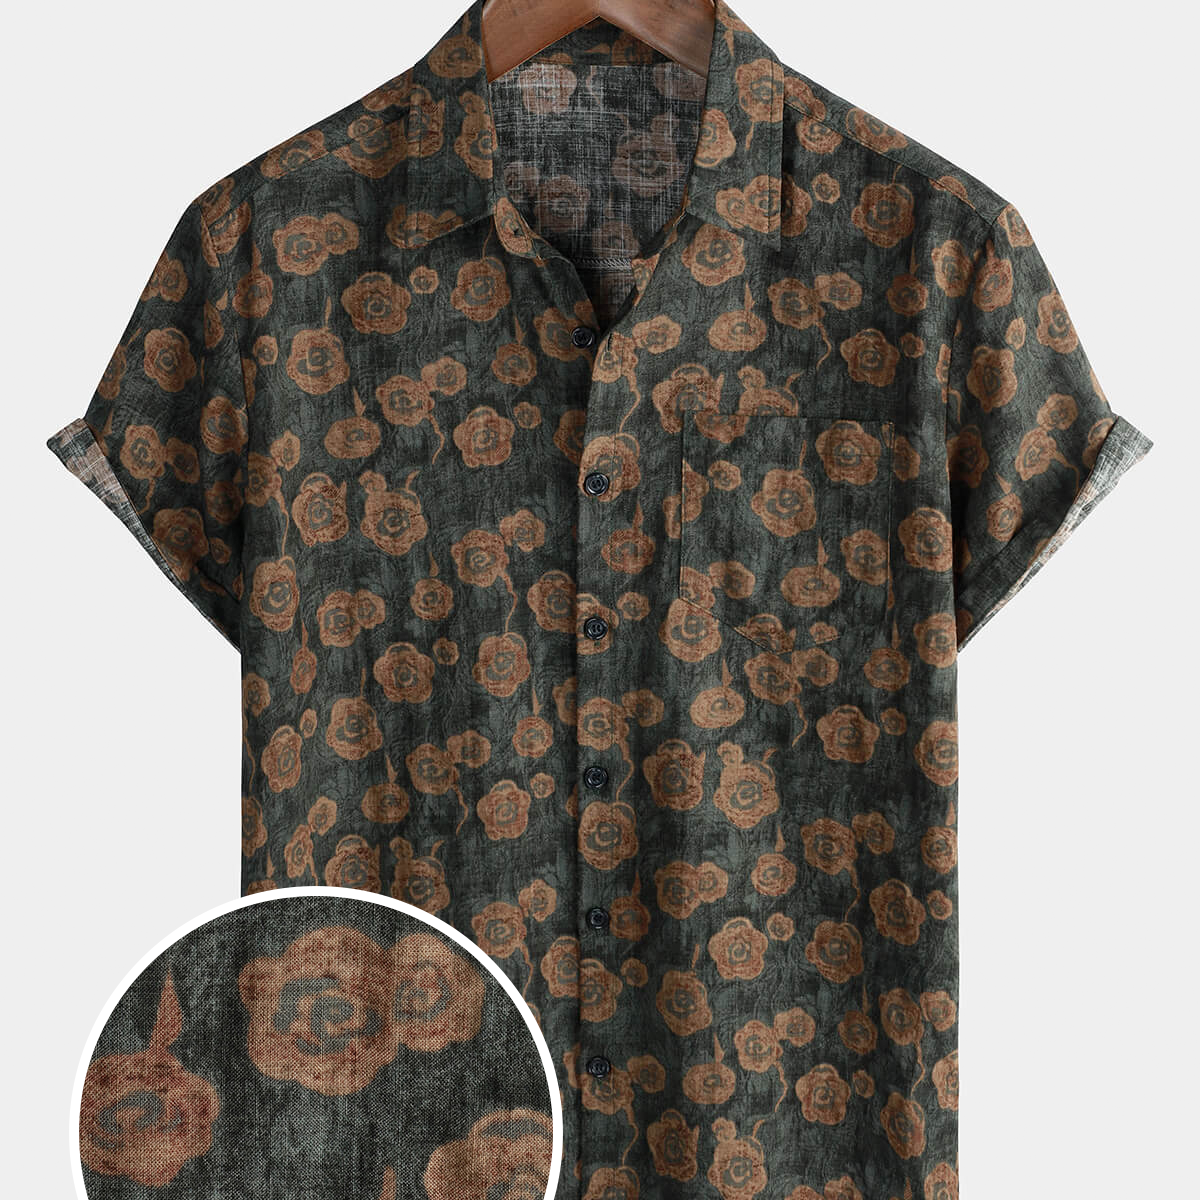 Chemise boutonnée à manches courtes pour hommes, Vintage, motif floral, poche de vacances, été